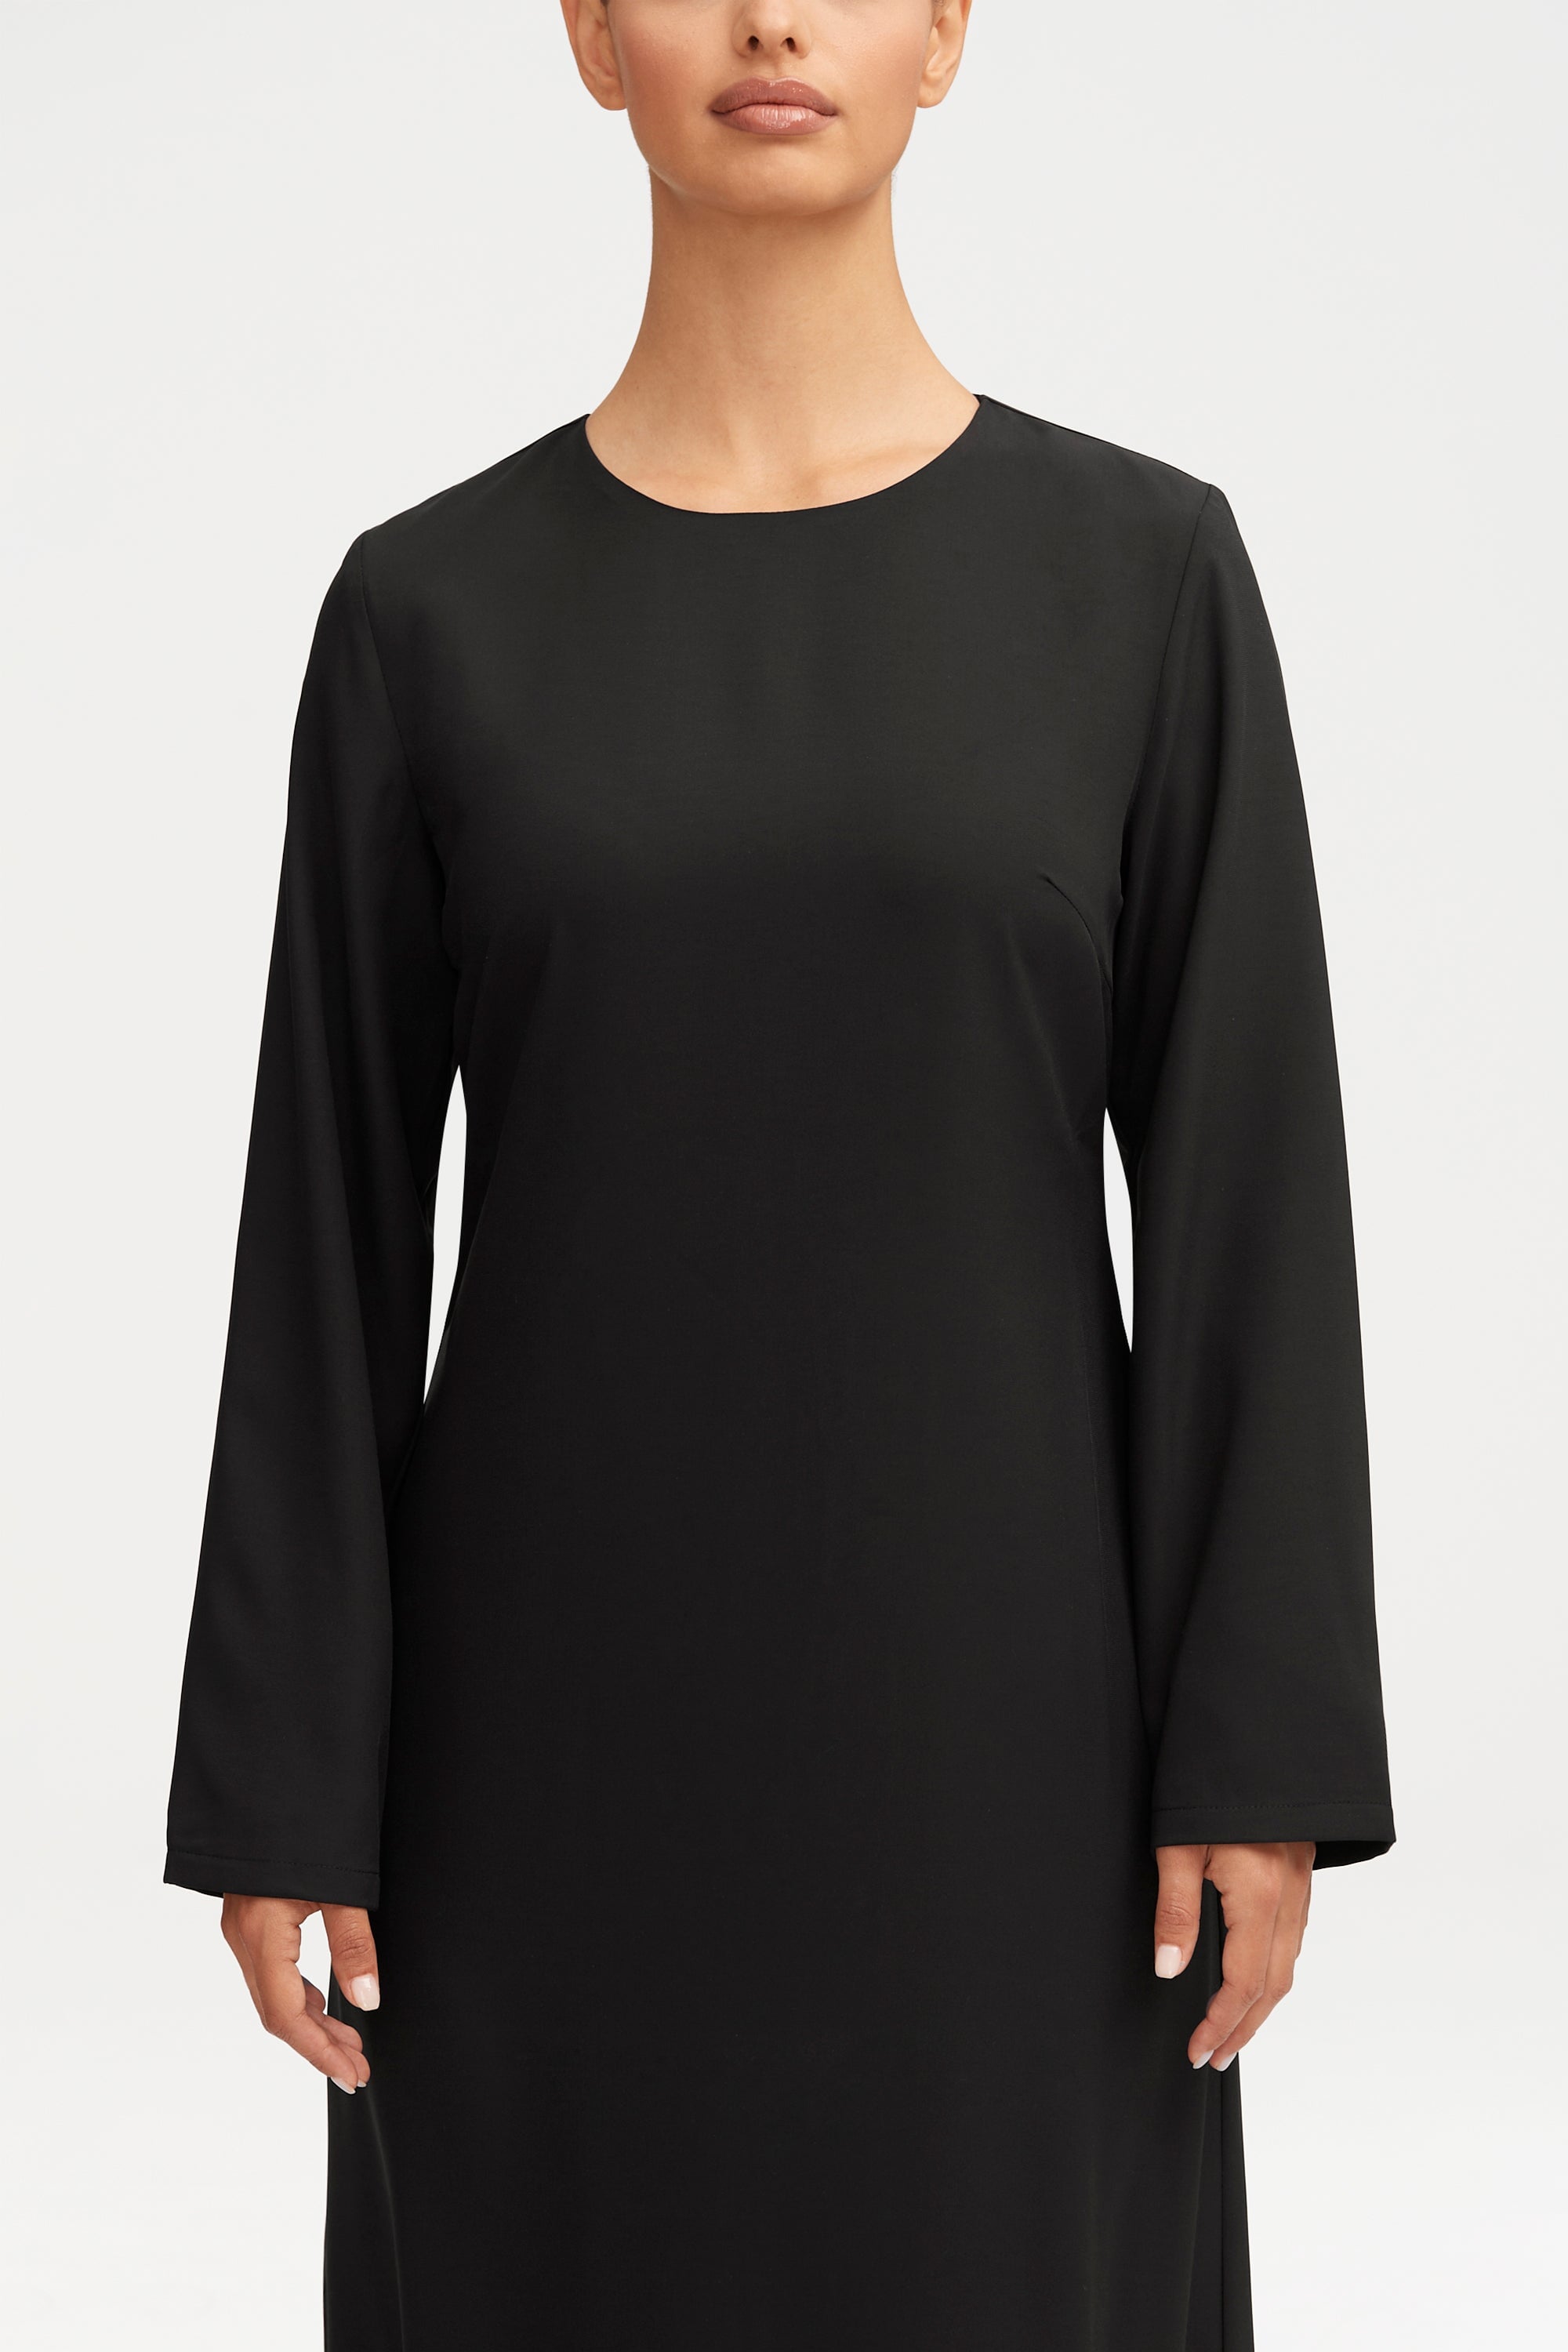 Essential Basic Maxi Dress - Black Clothing saigonodysseyhotel 